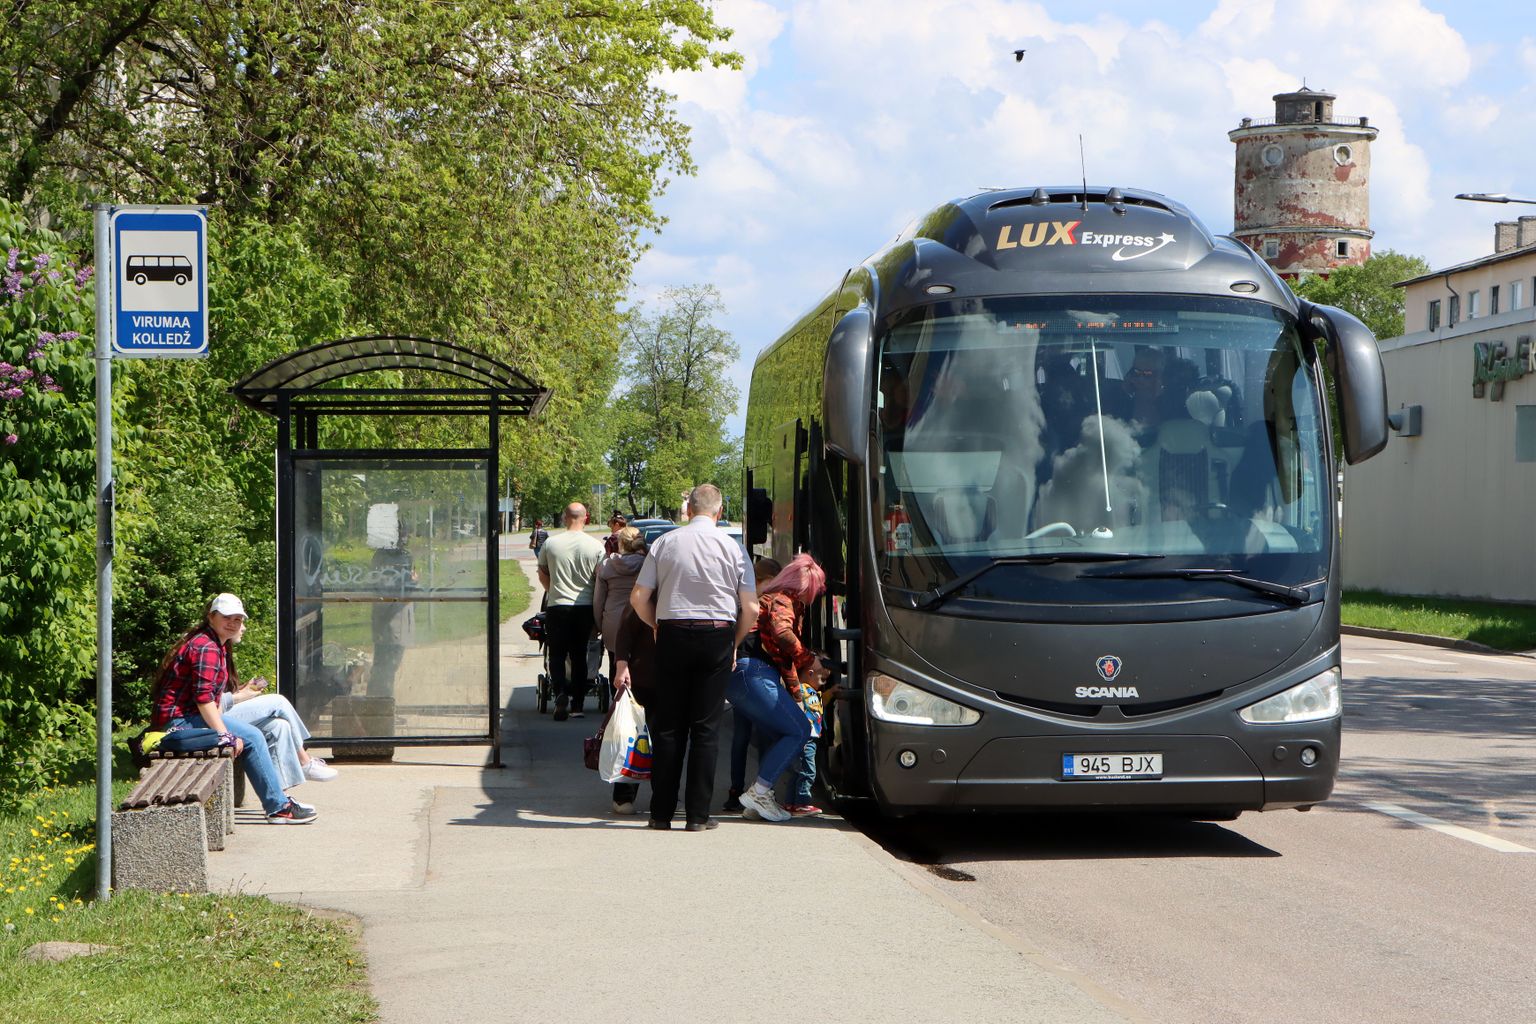 Автобусы "Lux Express" уже почти полгода забирают пассажиров на остановке "Virumaa kolledž" или у бывшей аптеки. Людям приходится ждать междугородного рейса в некомфортных условиях.